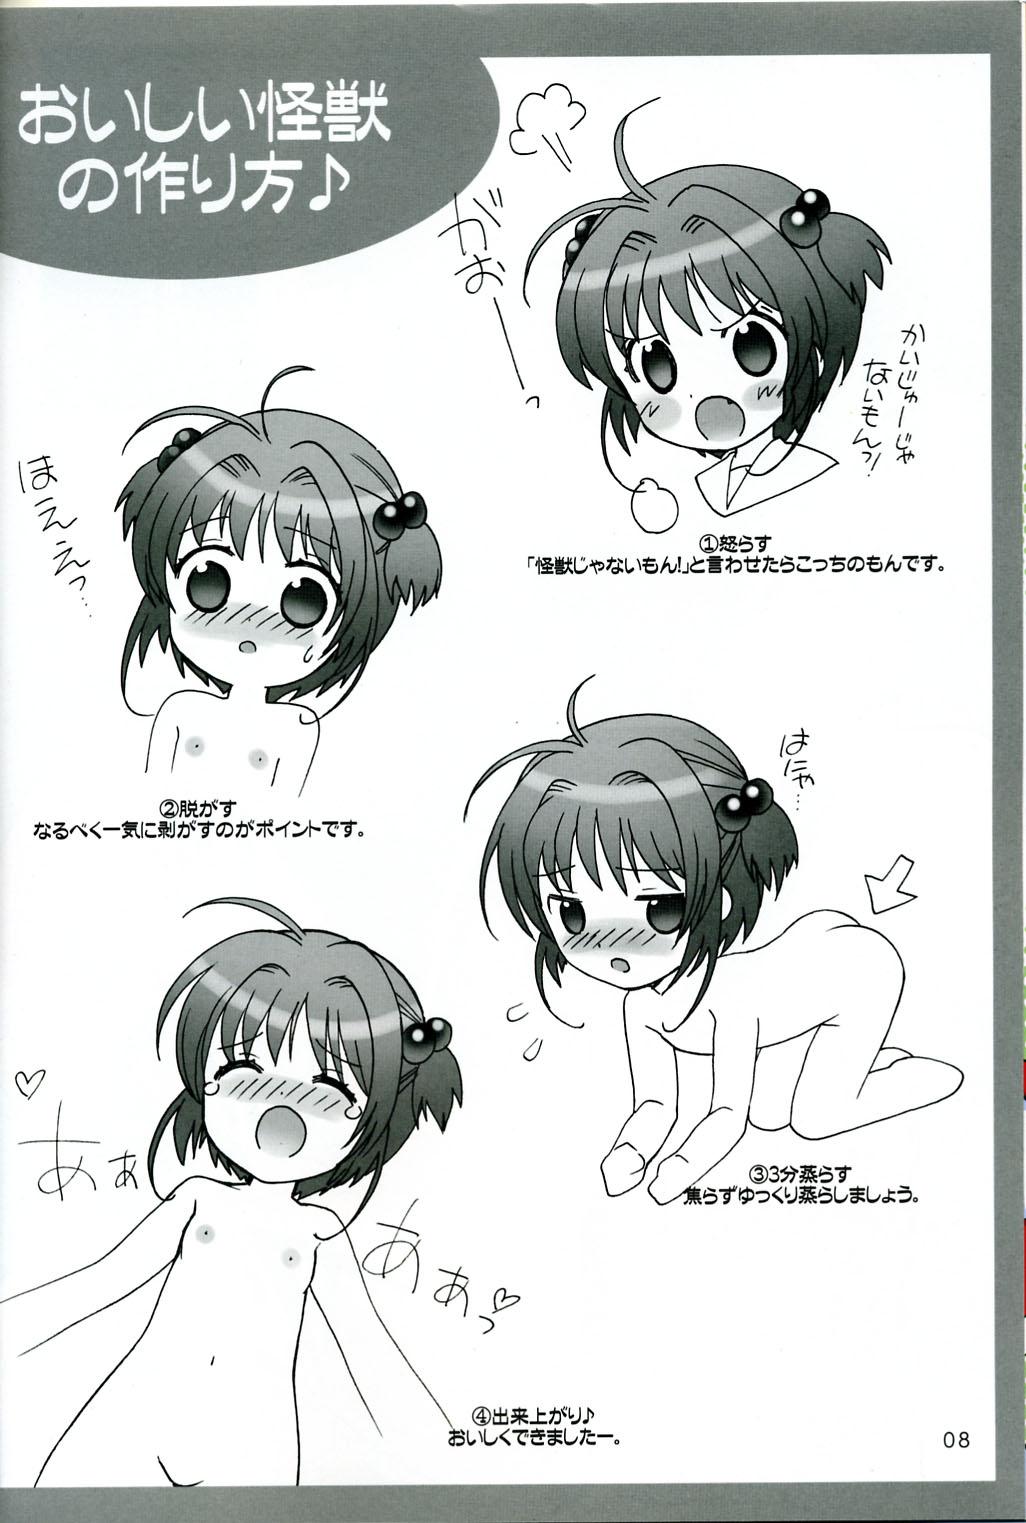 Cams Sakura Kaijuu Ja Nai Mon! - Cardcaptor sakura Asia - Page 7